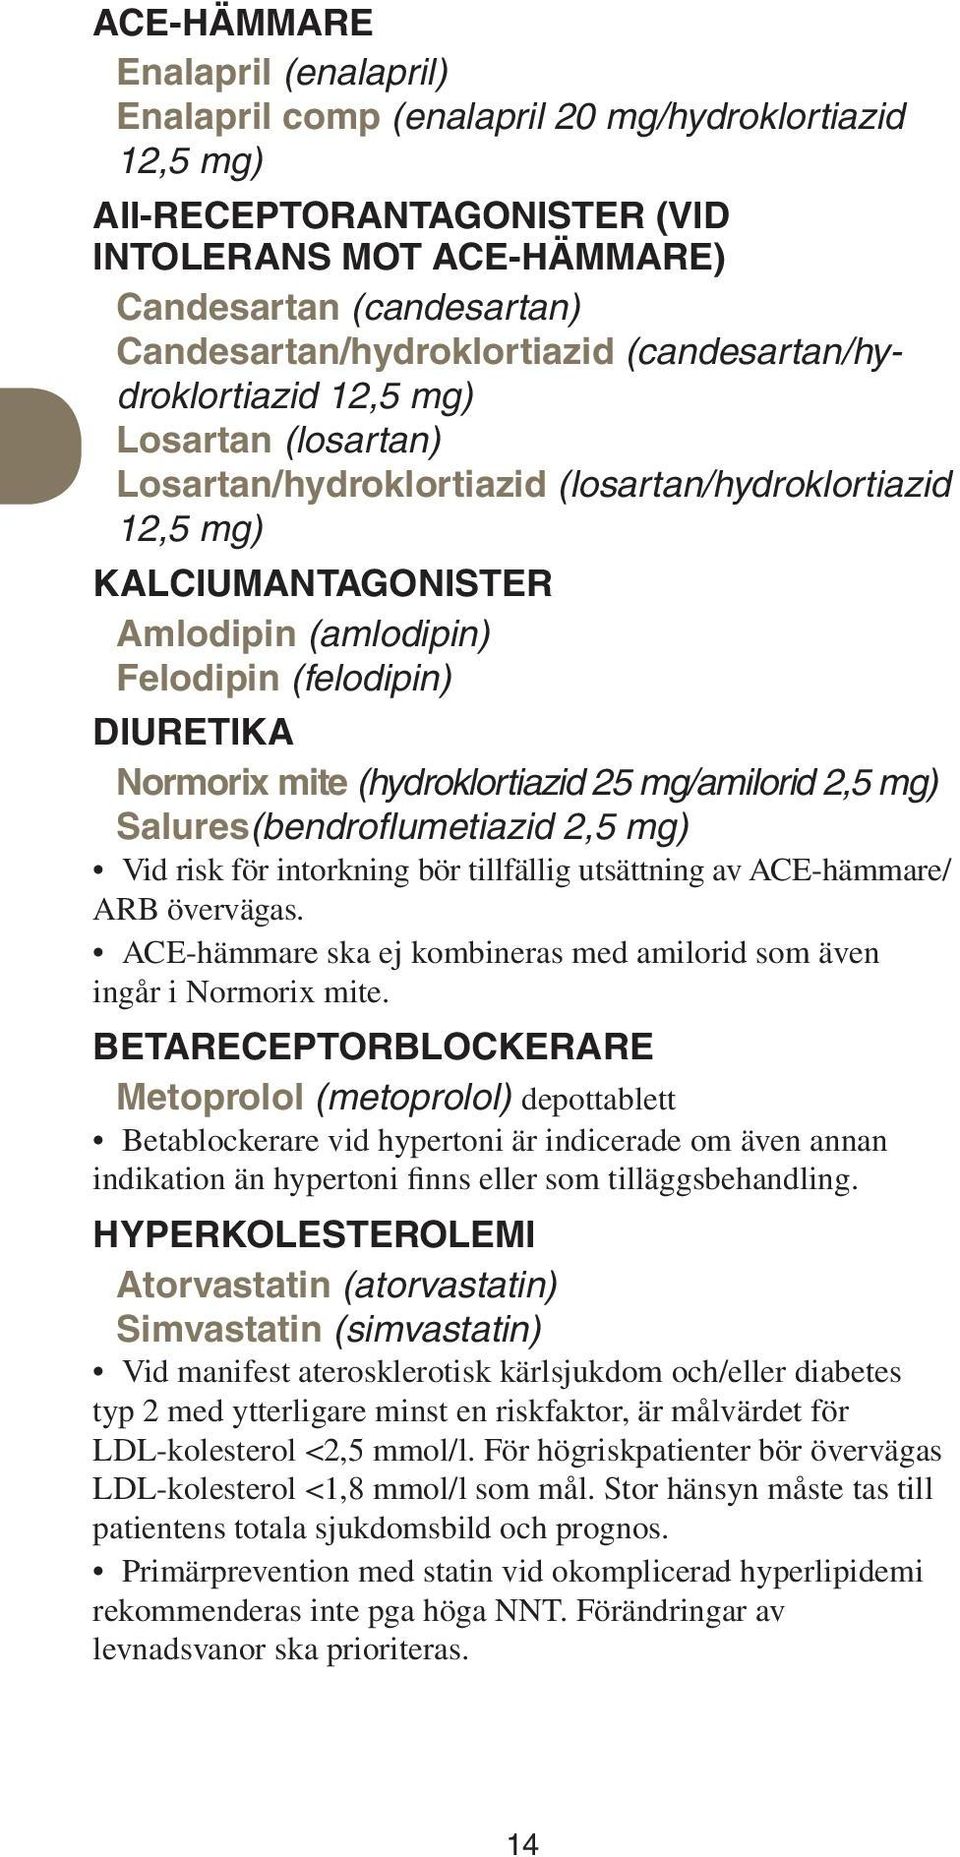 (felodipin) Diuretika Normorix mite (hydroklortiazid 25 mg/amilorid 2,5 mg) Salures(bendroflumetiazid 2,5 mg) Vid risk för intorkning bör tillfällig utsättning av ACE-hämmare/ ARB övervägas.